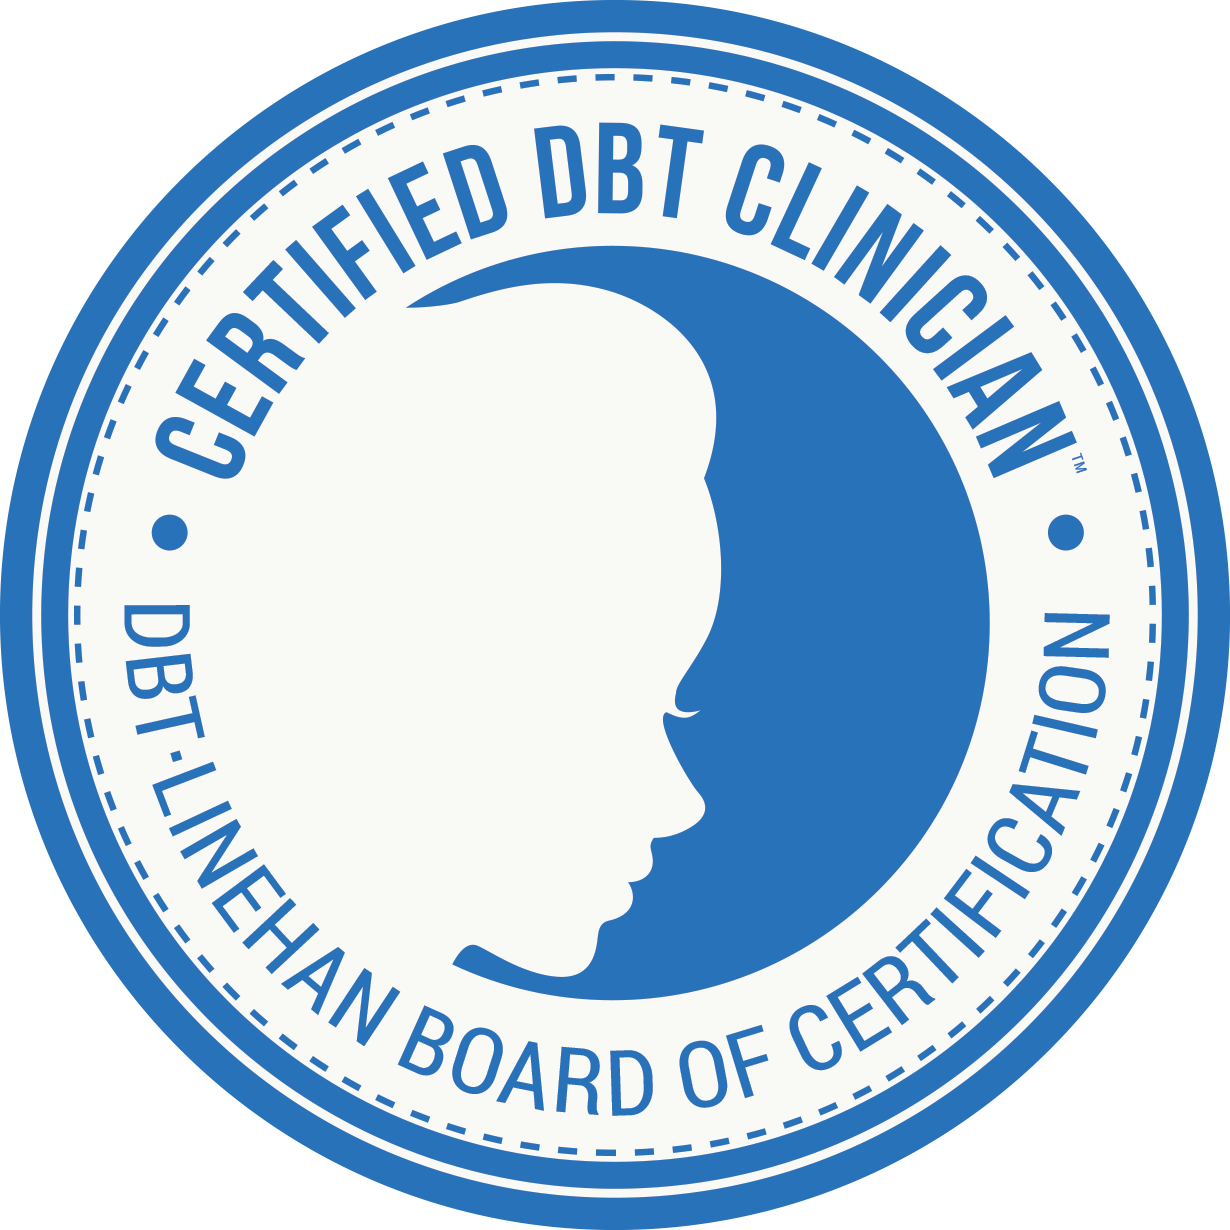 DBT Linehan Board of Certification - Certified DBT Clinician